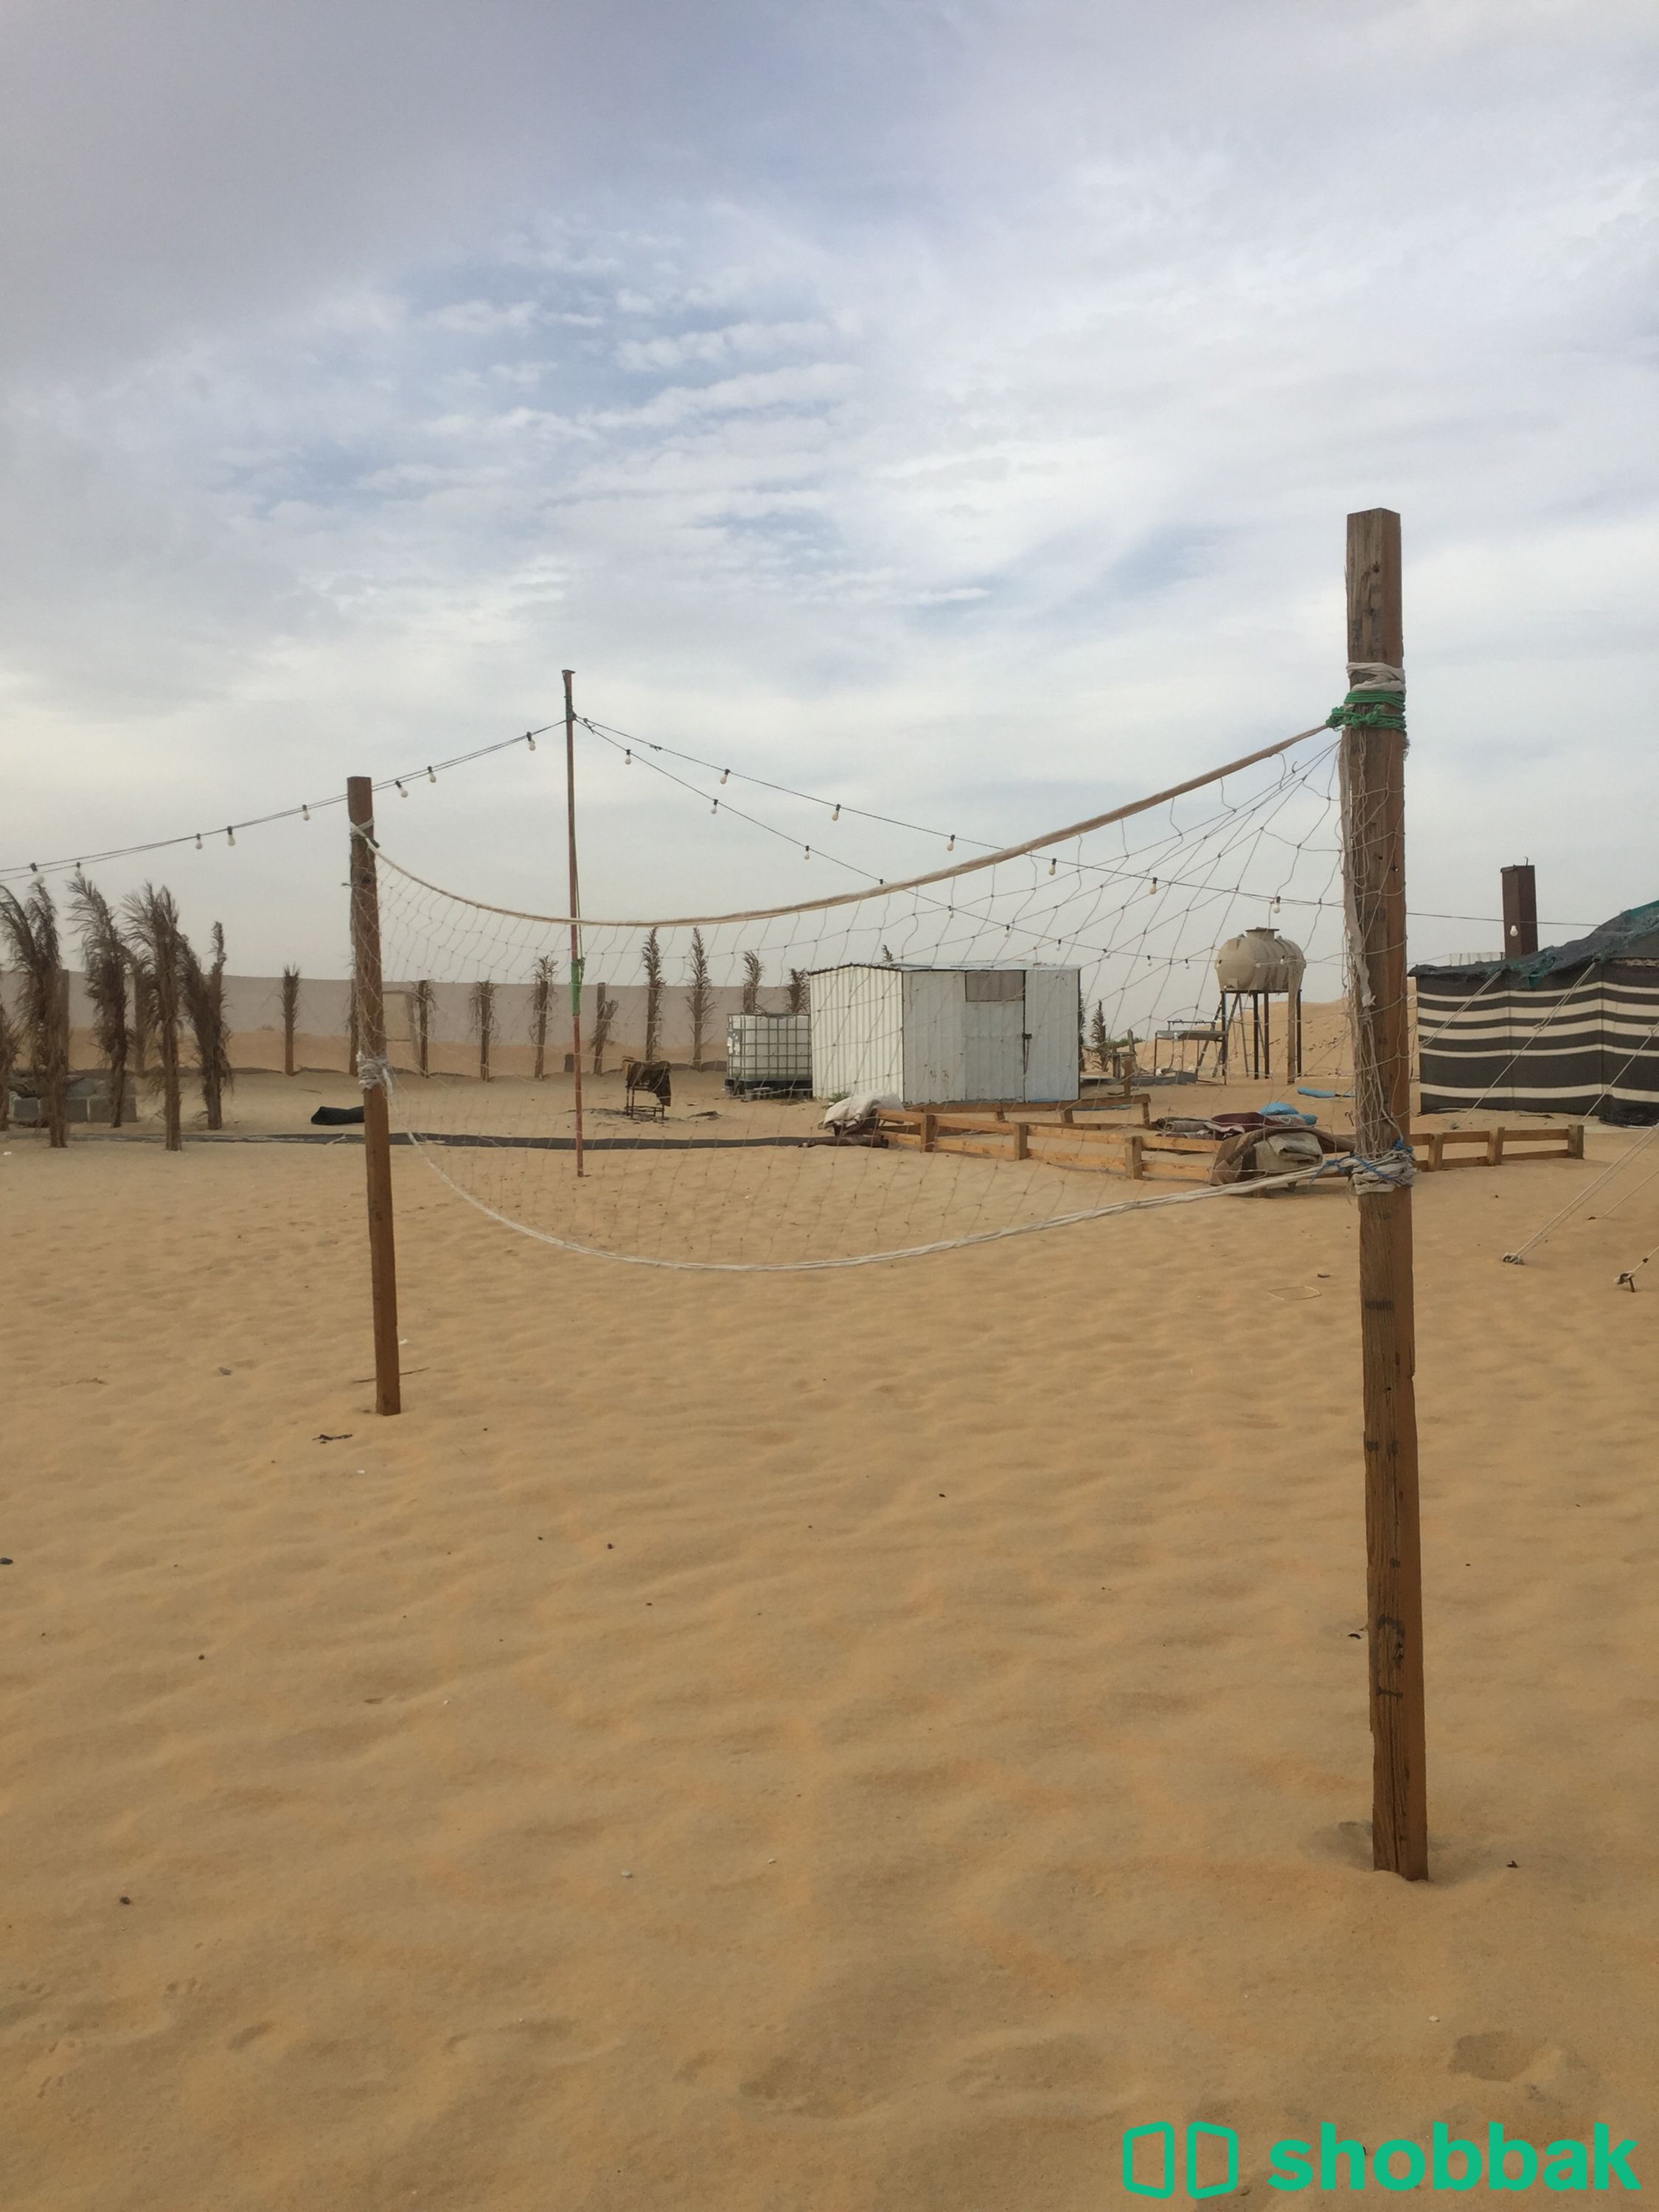 مخيم على طريق المطار الدمام للإيجار  Shobbak Saudi Arabia